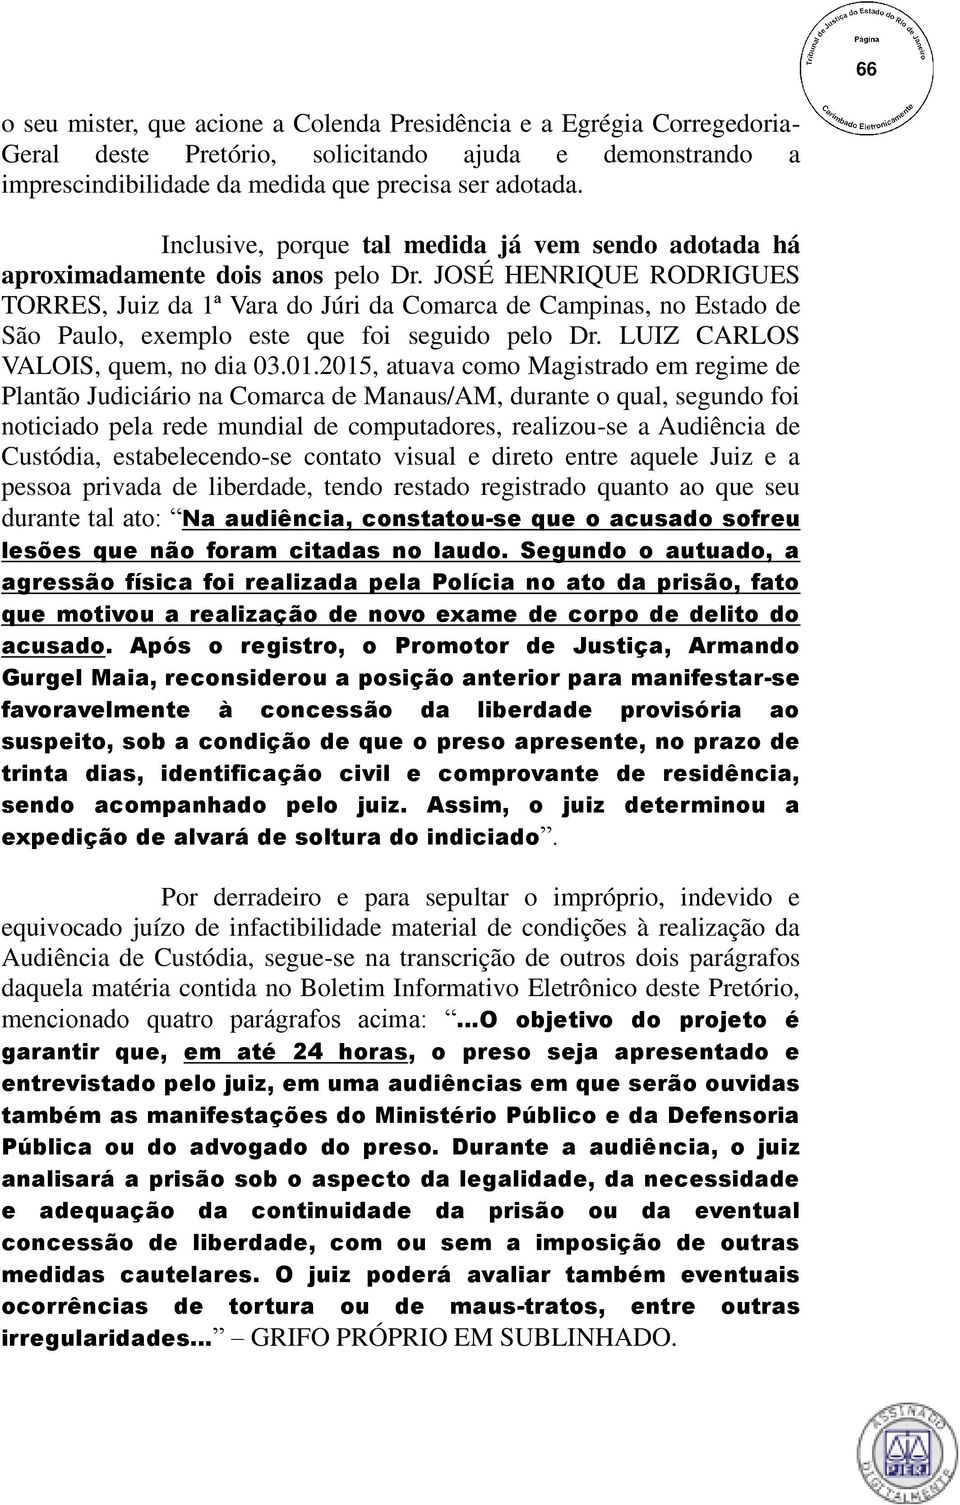 JOSÉ HENRIQUE RODRIGUES TORRES, Juiz da 1ª Vara do Júri da Comarca de Campinas, no Estado de São Paulo, exemplo este que foi seguido pelo Dr. LUIZ CARLOS VALOIS, quem, no dia 03.01.